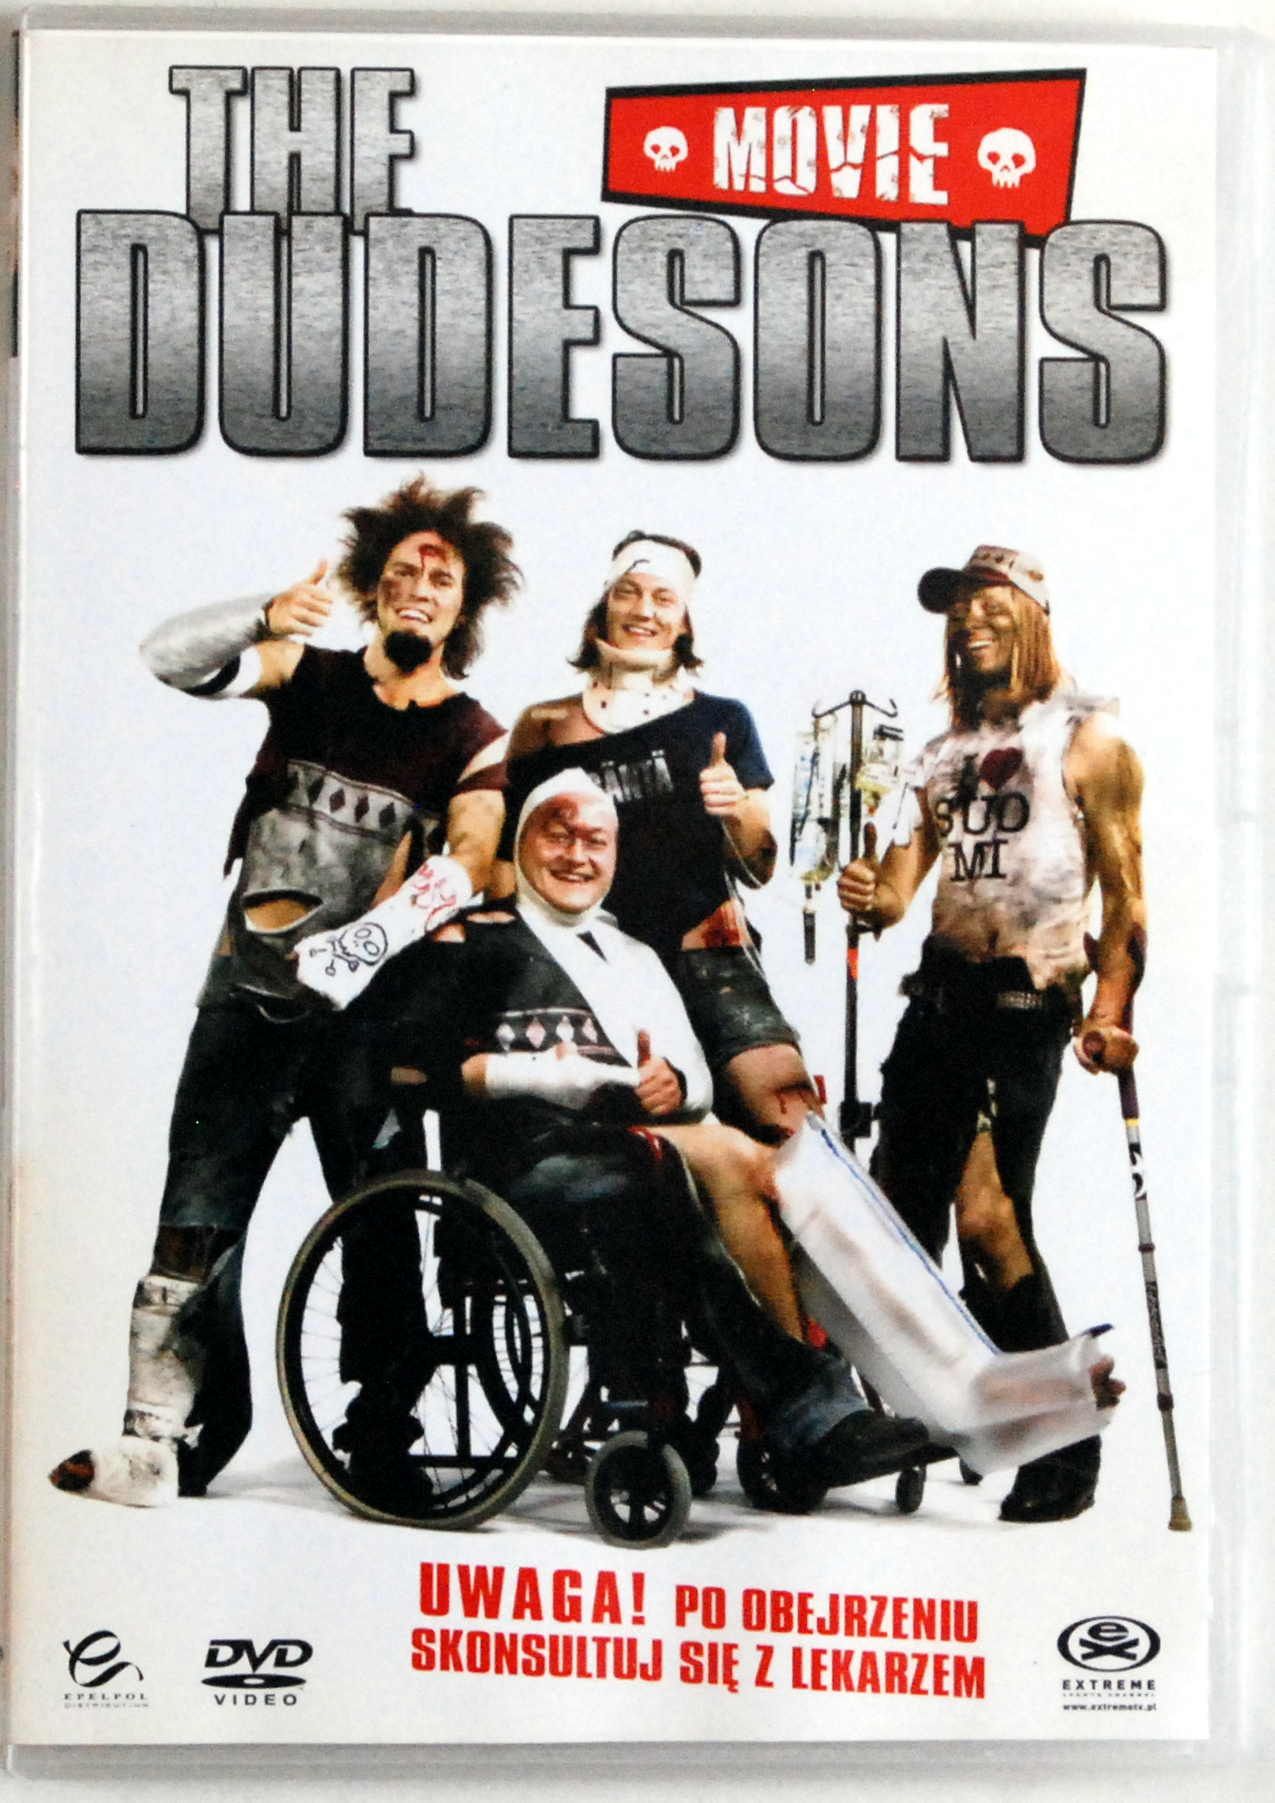 DVD The Dudesons Movie